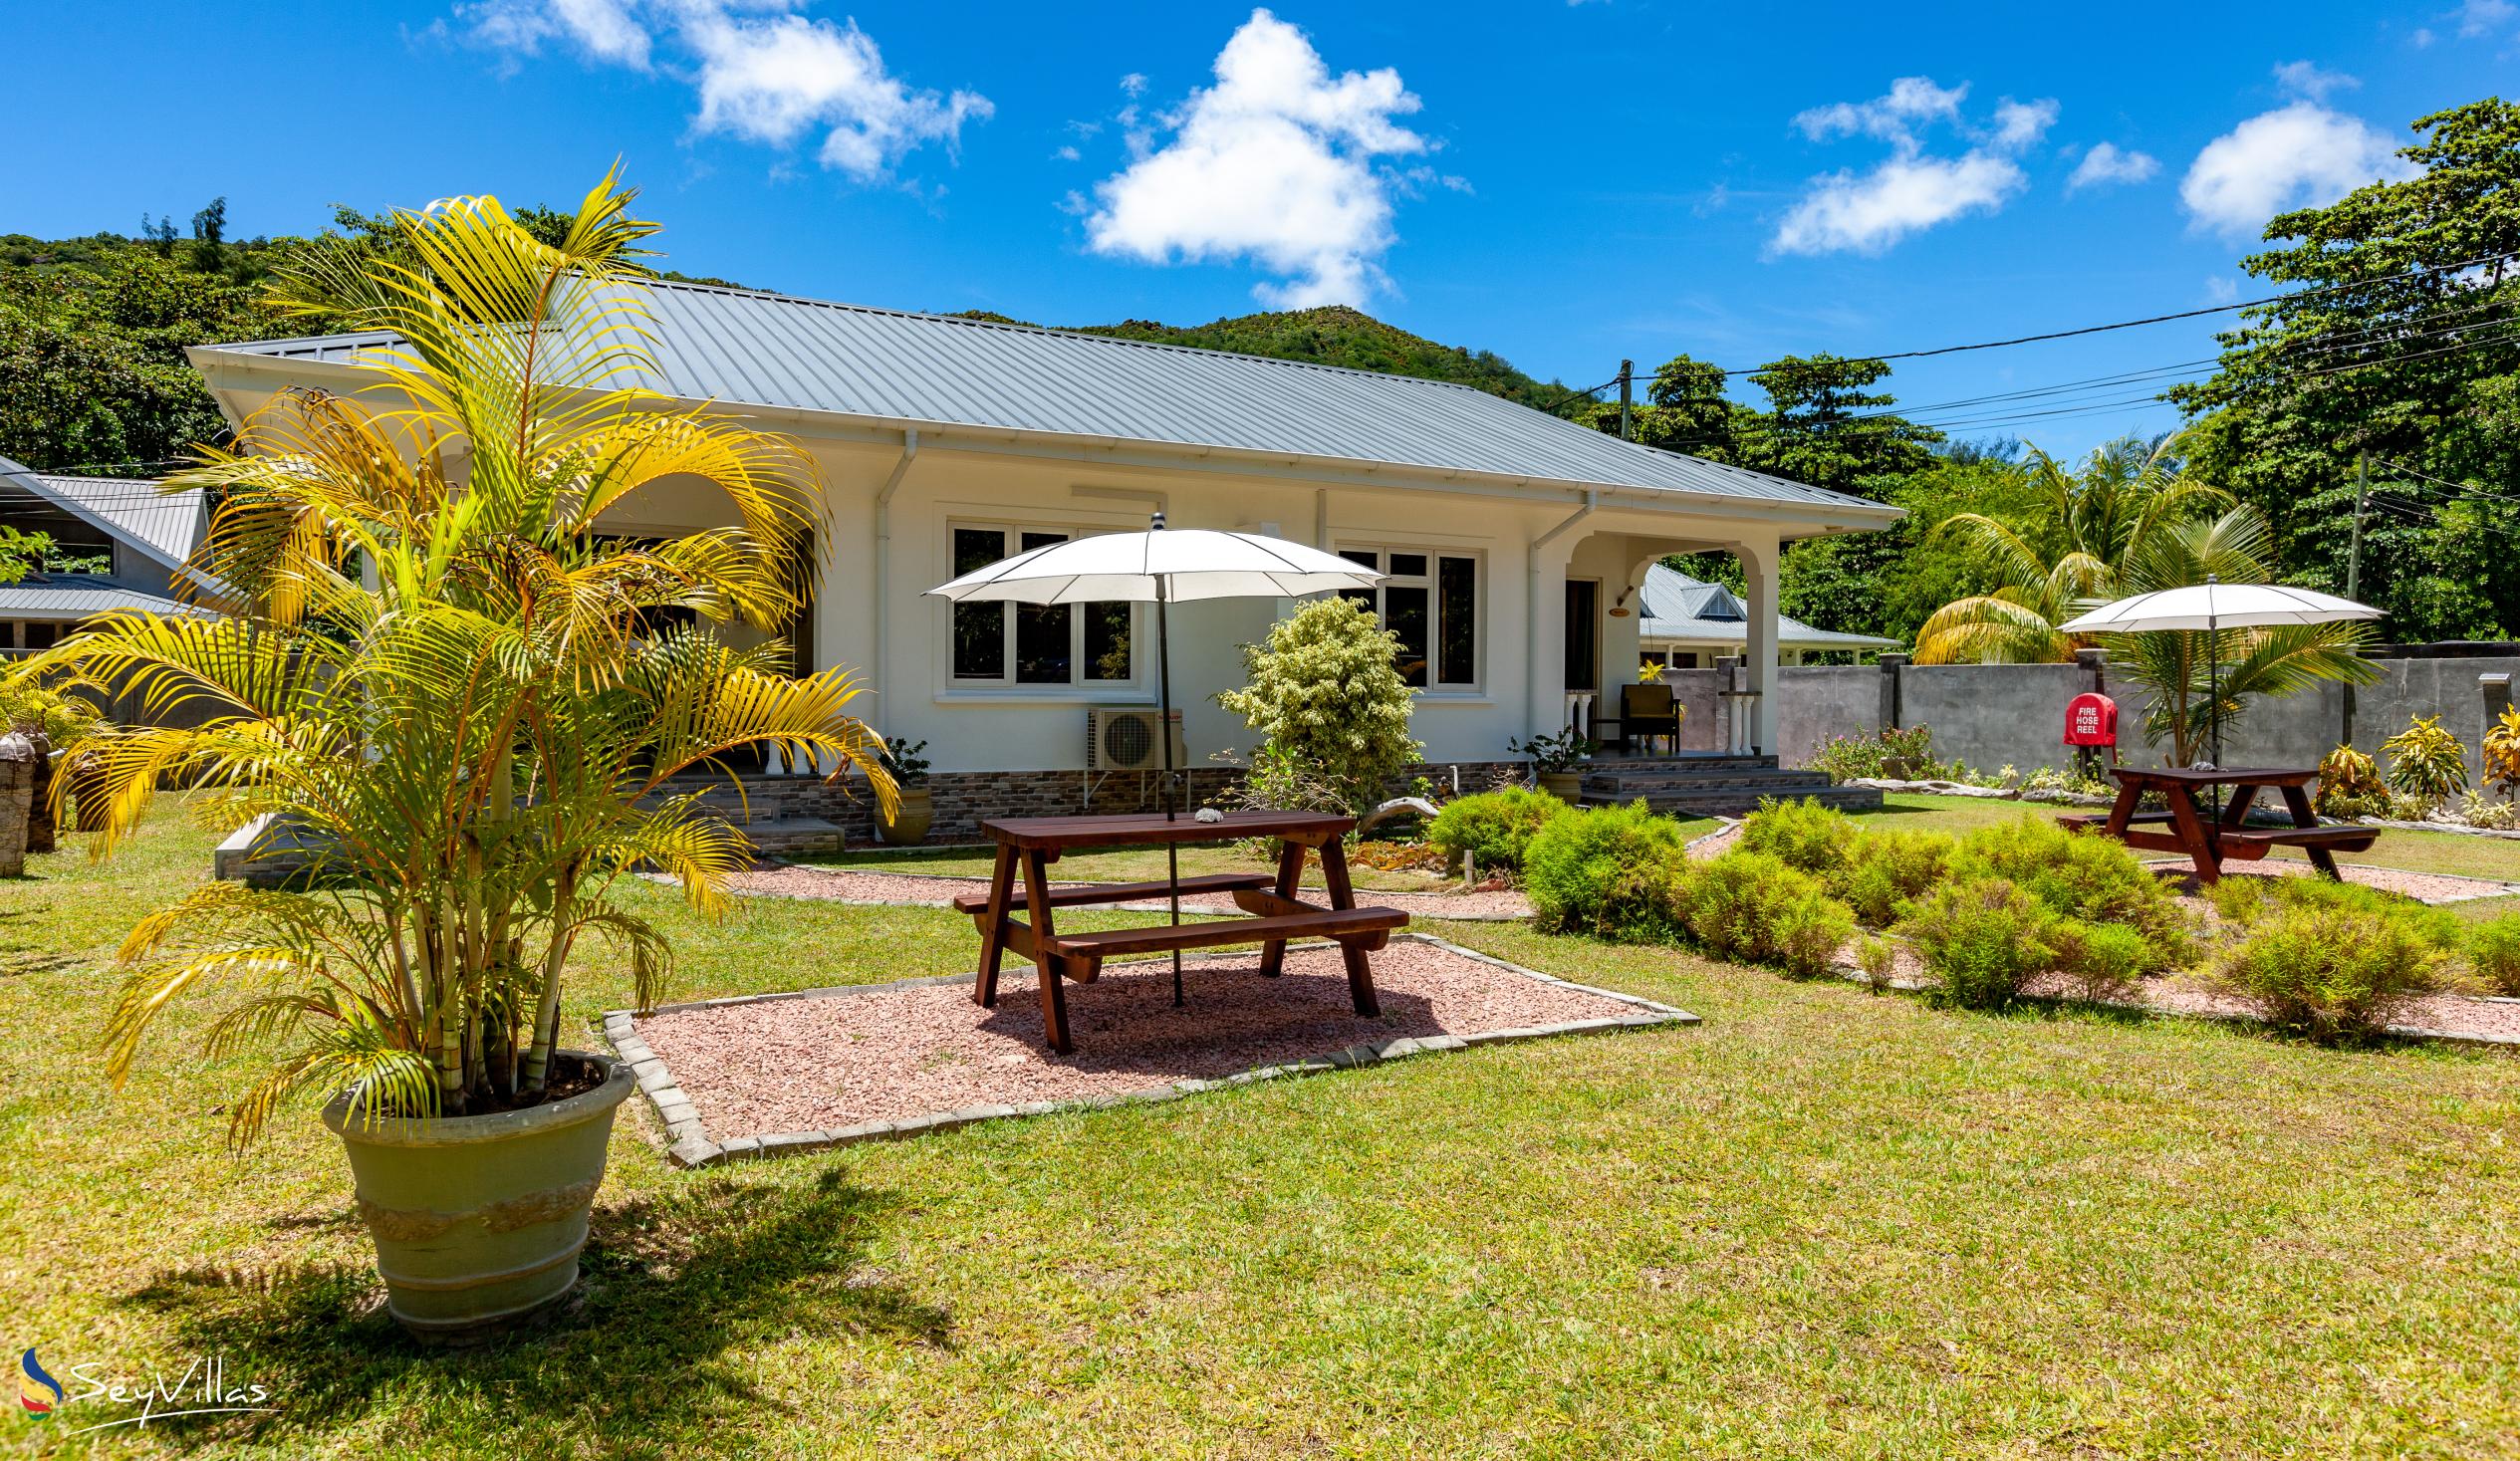 Foto 11: ANV Holiday Apartments - Aussenbereich - Praslin (Seychellen)